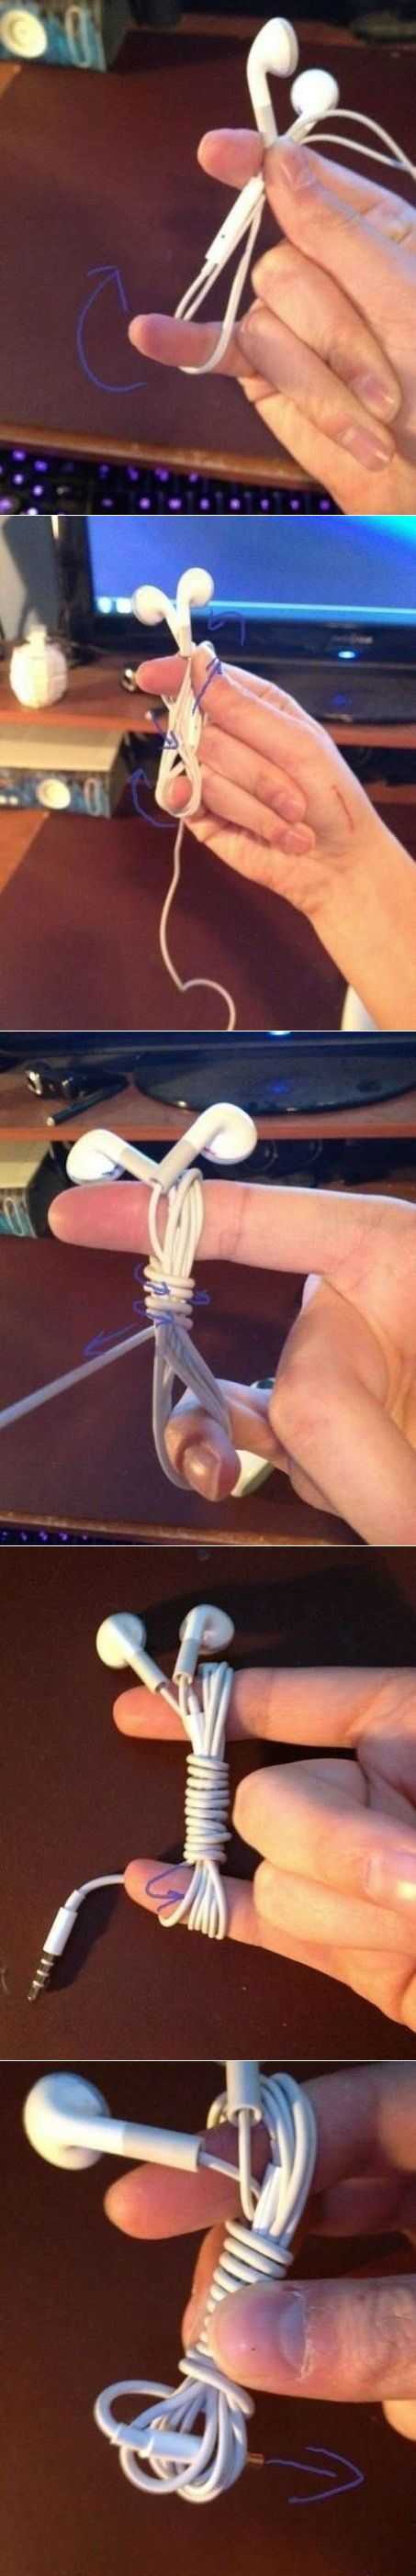 Как складывать наушники, чтобы их провода не путались?